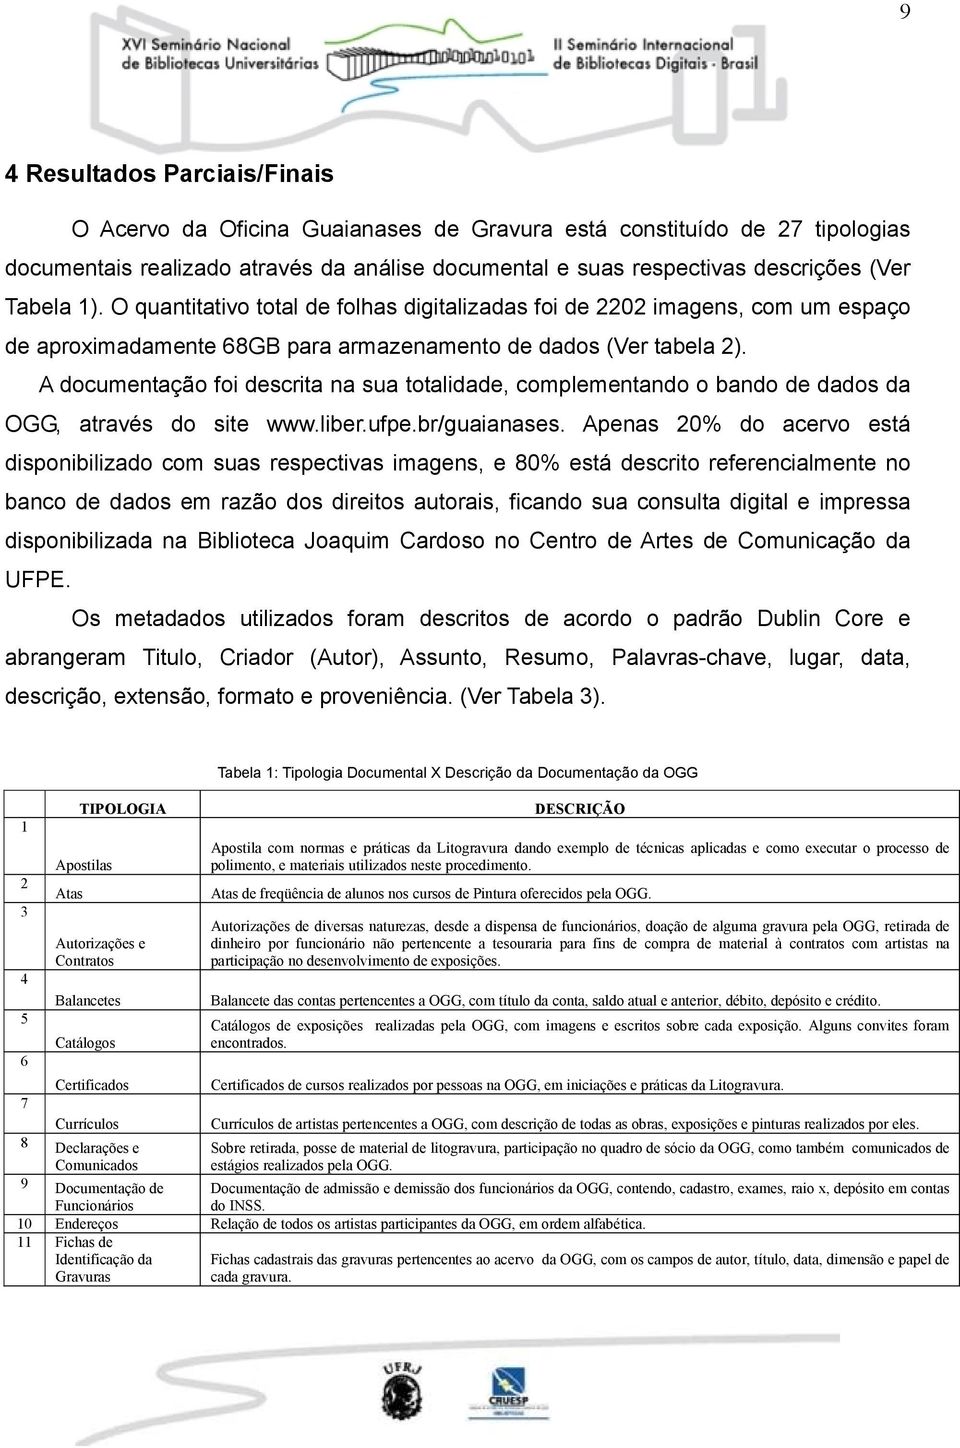 A documentação foi descrita na sua totalidade, complementando o bando de dados da OGG, através do site www.liber.ufpe.br/guaianases.